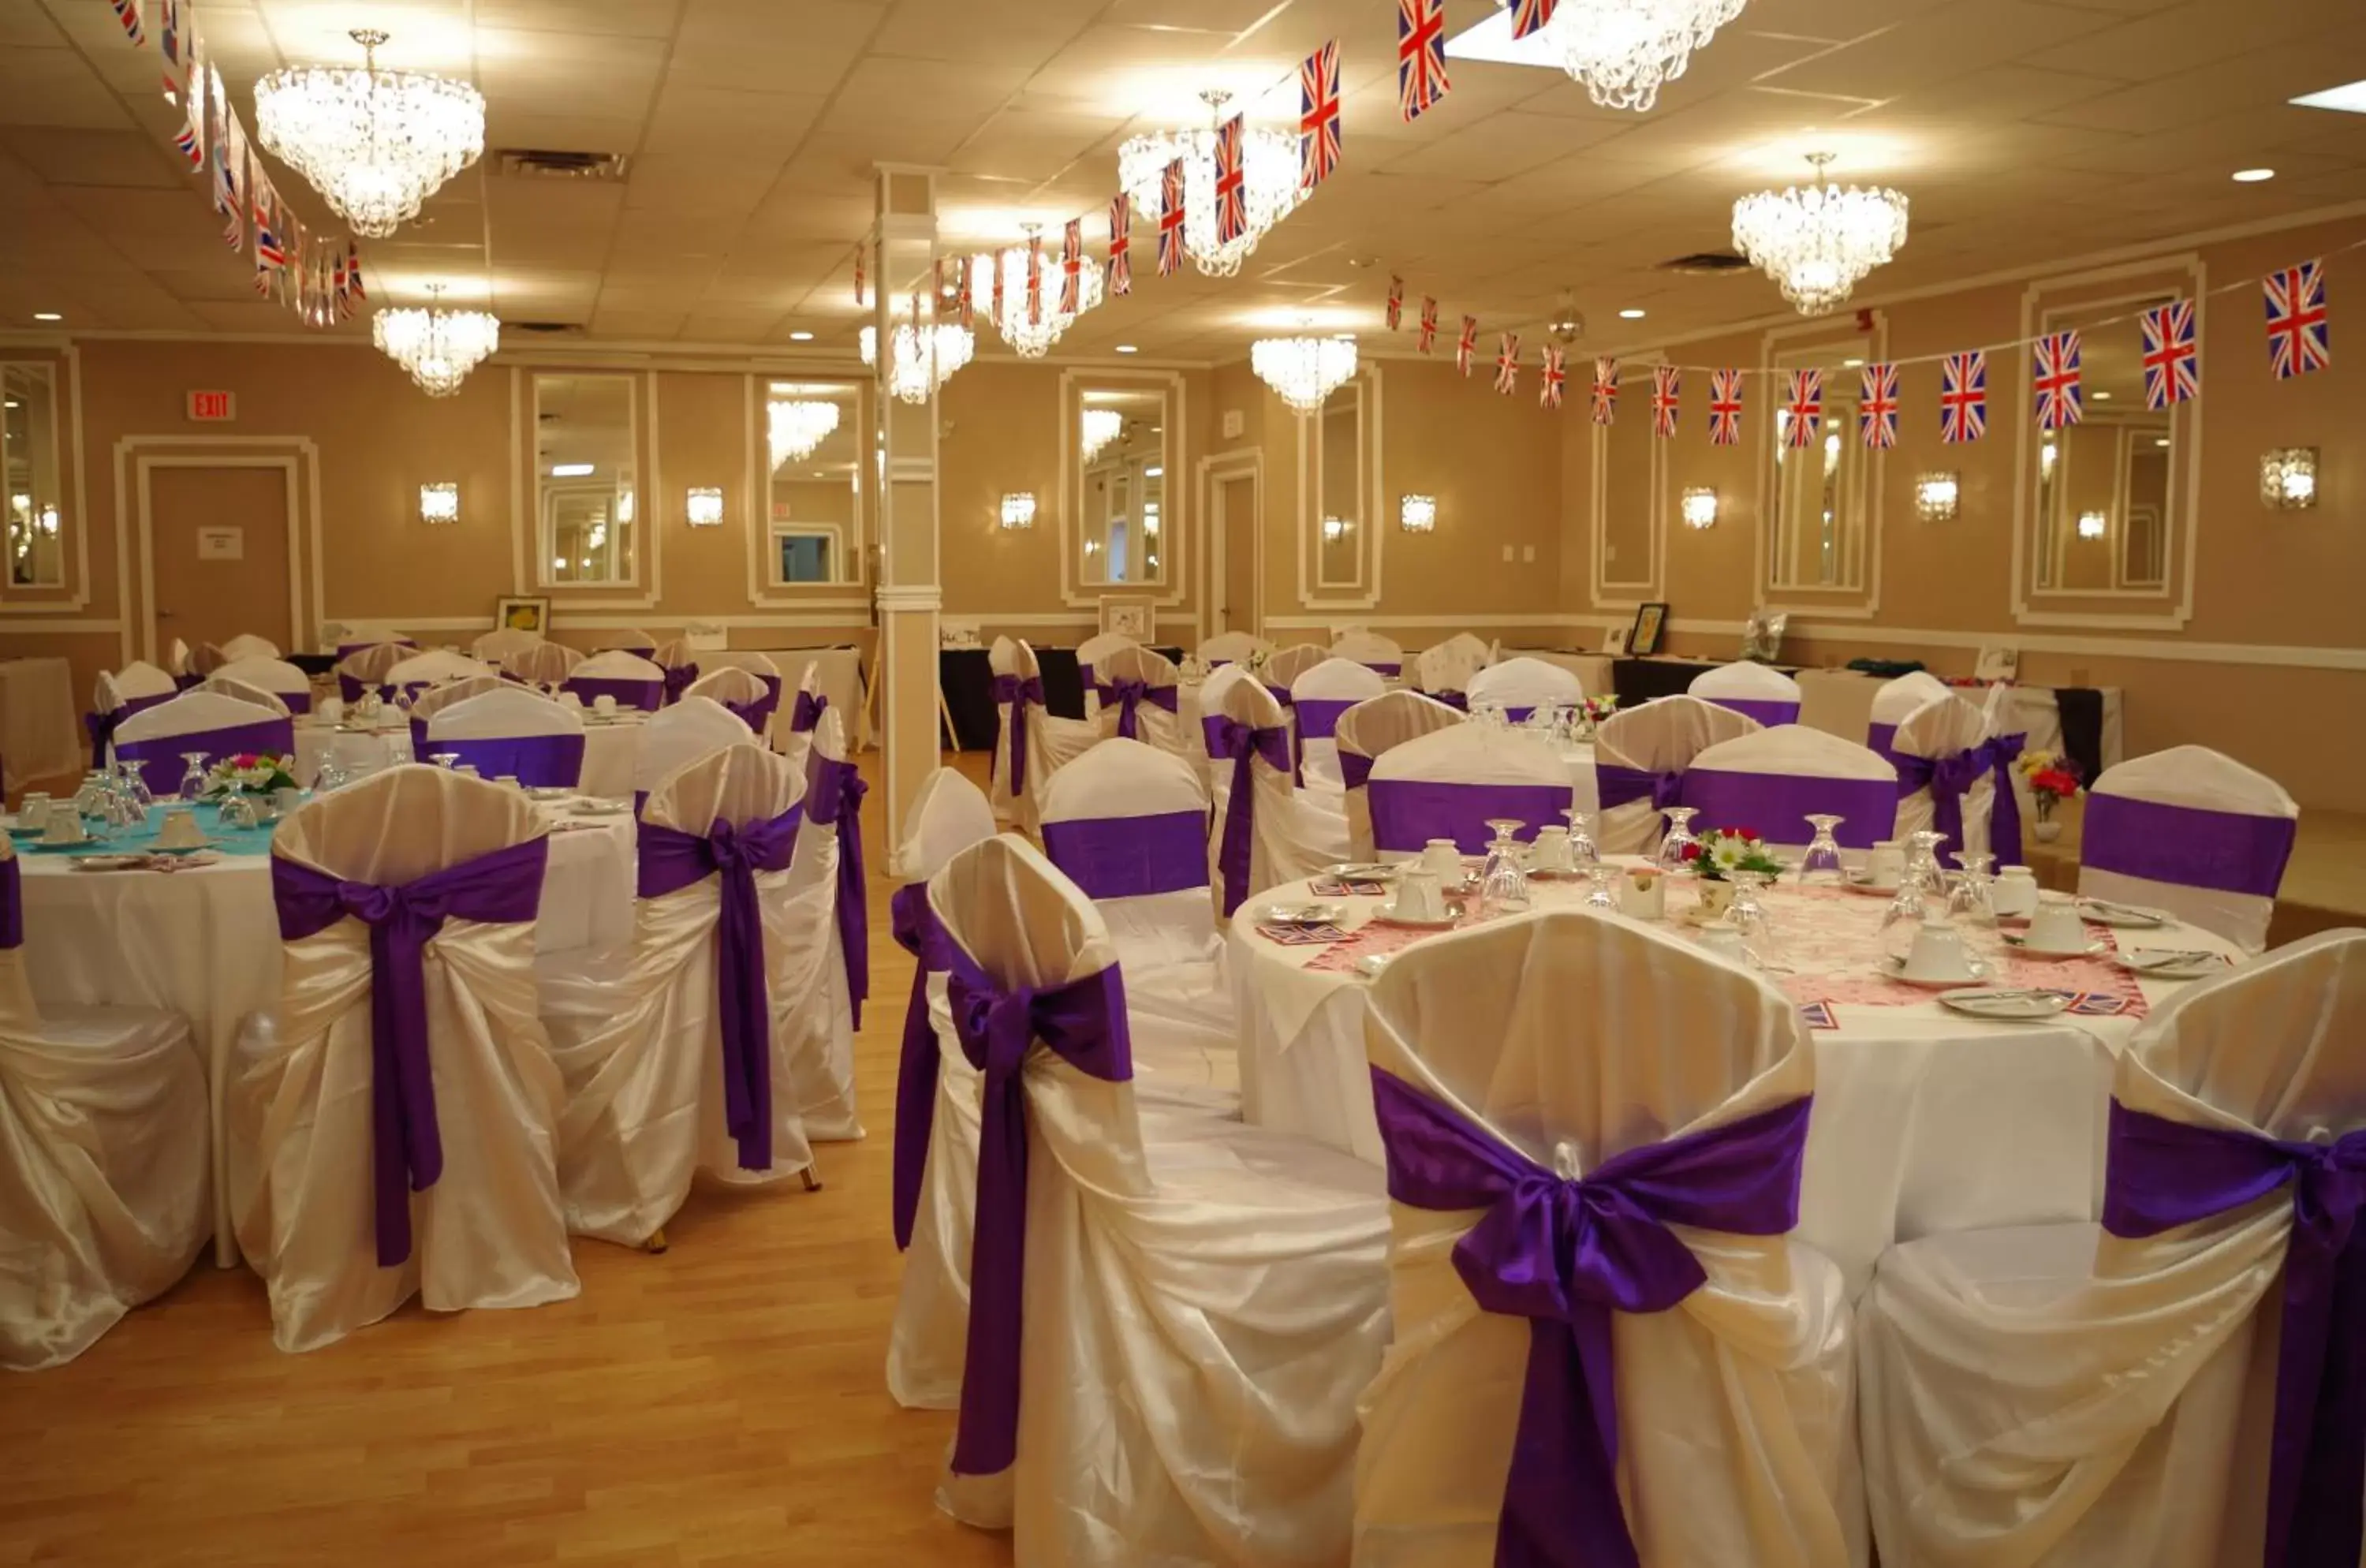 Banquet/Function facilities, Banquet Facilities in Causeway Bay Hotel